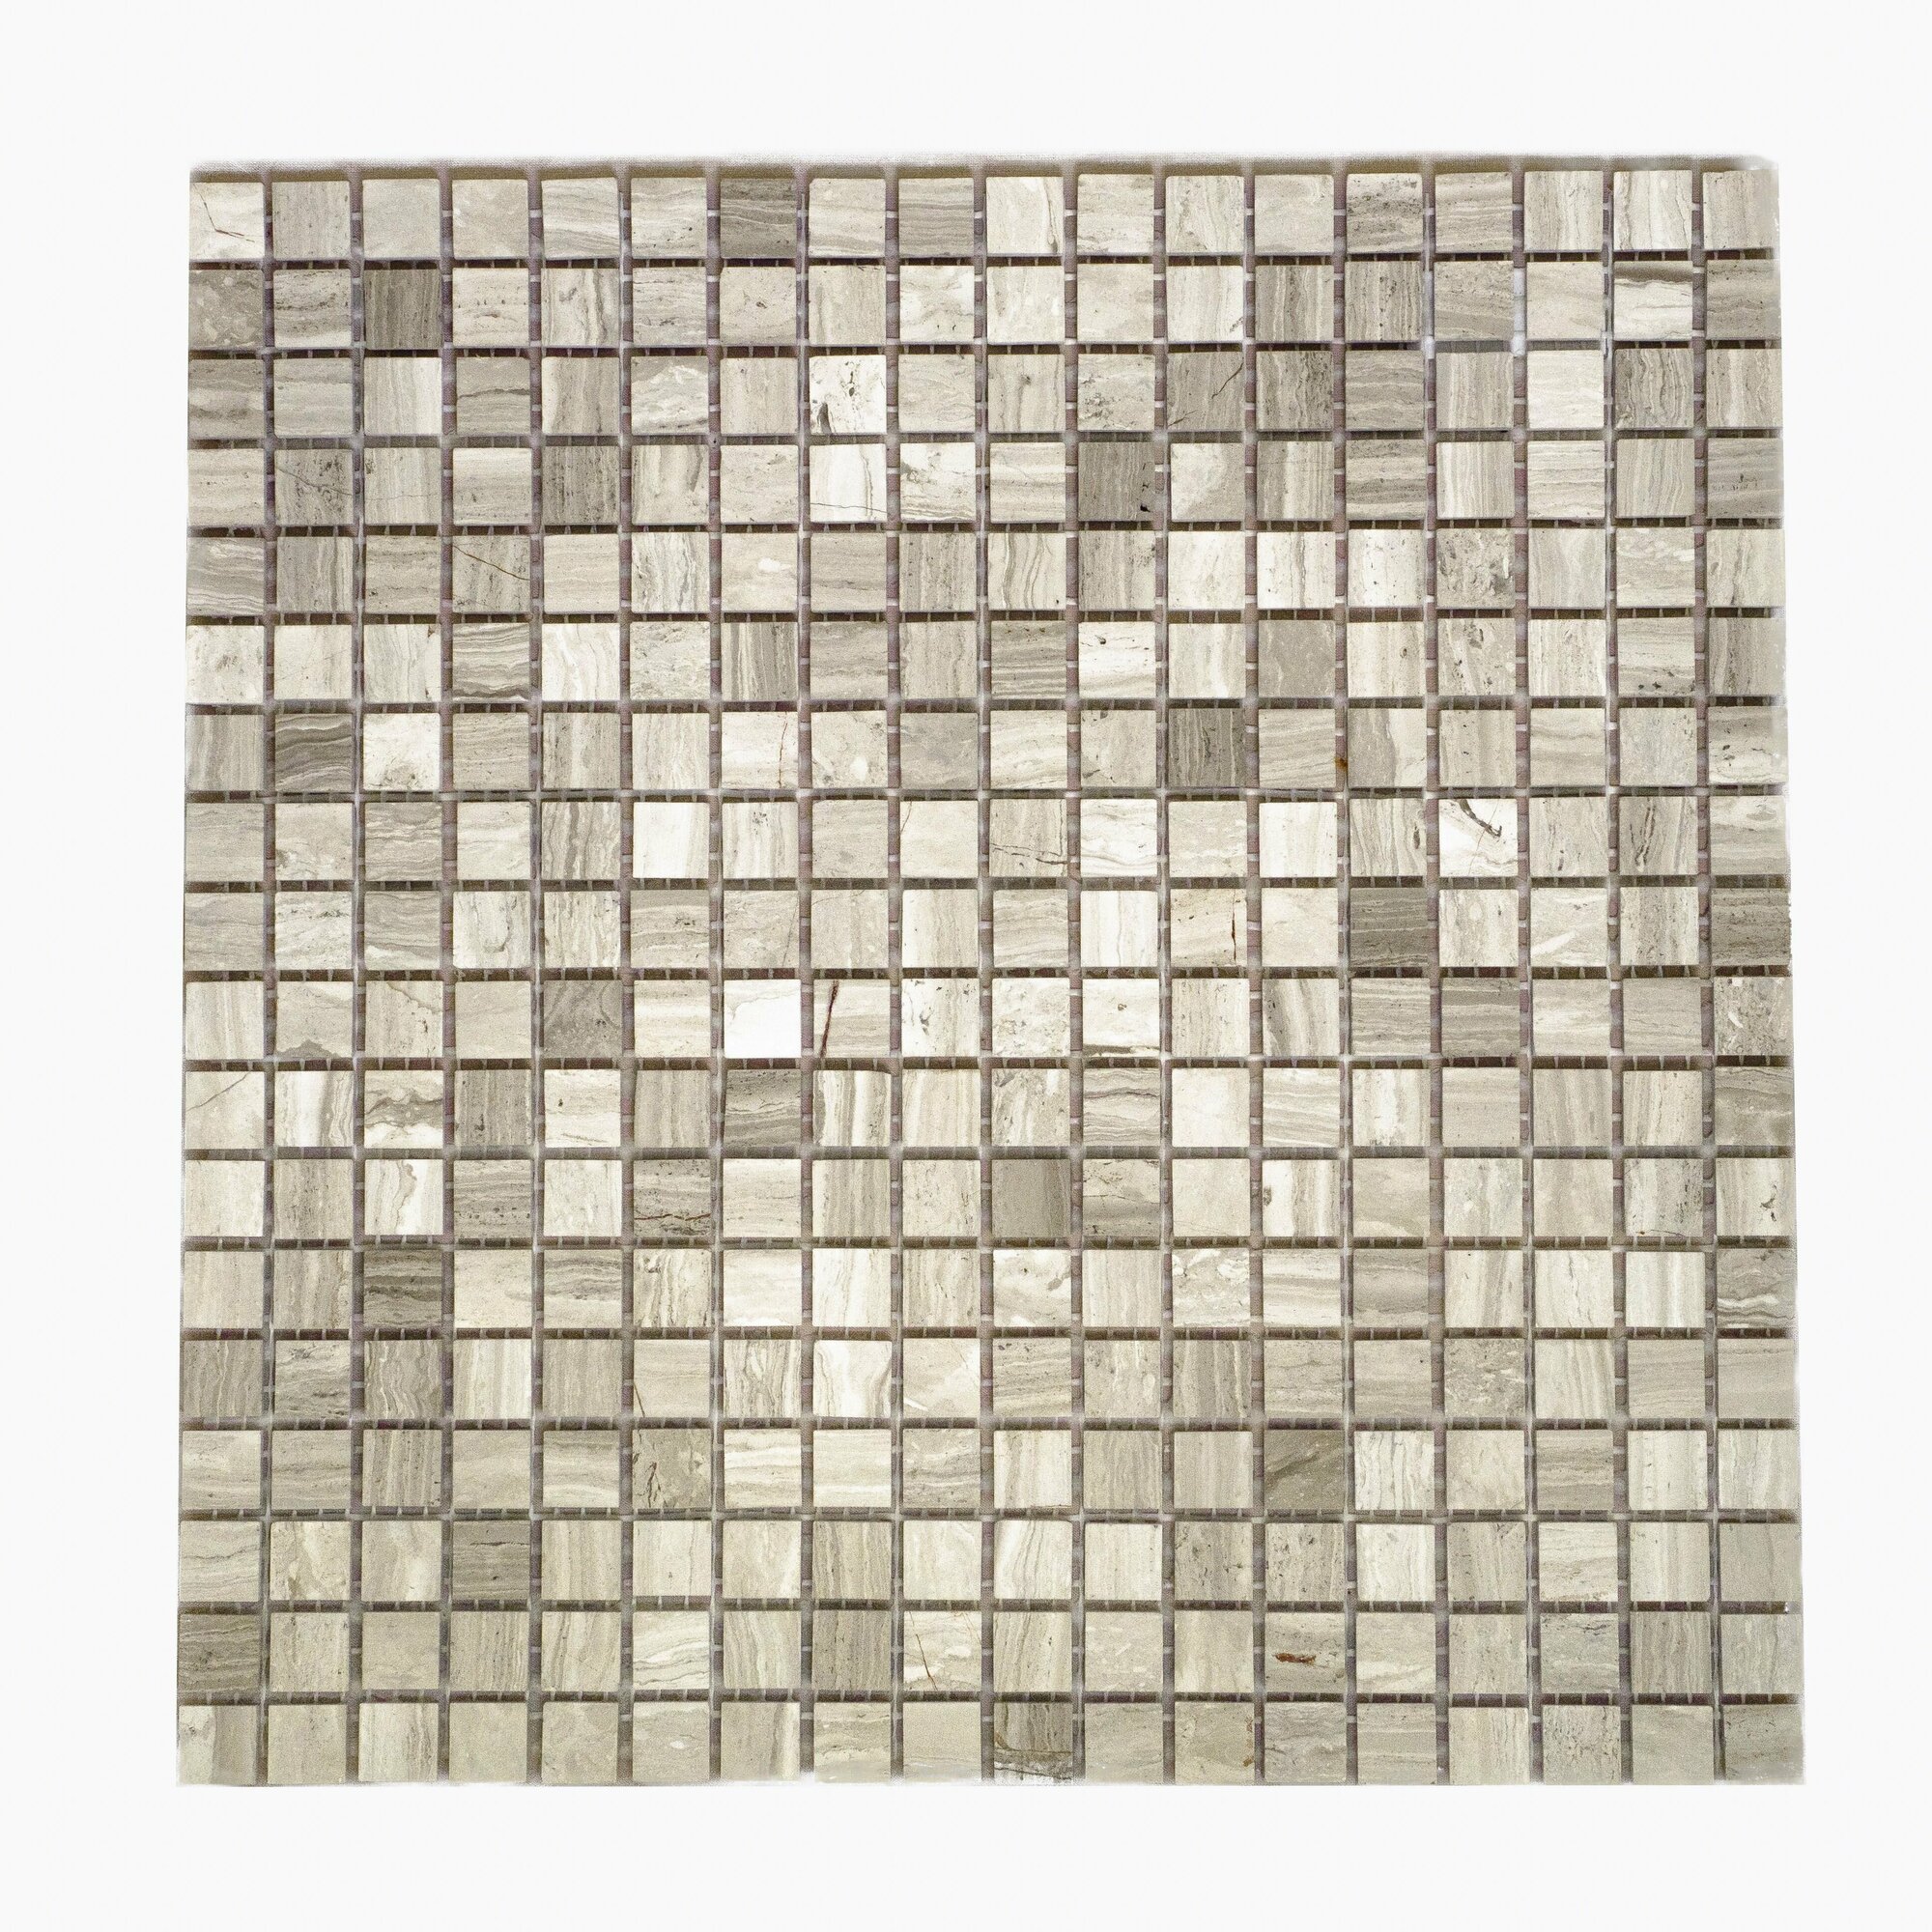 Плитка мозаика MIRO (серия Californium №36), каменная плитка мозаика для ванной комнаты и кухни, для душевой, для фартука на кухне, 1 шт.